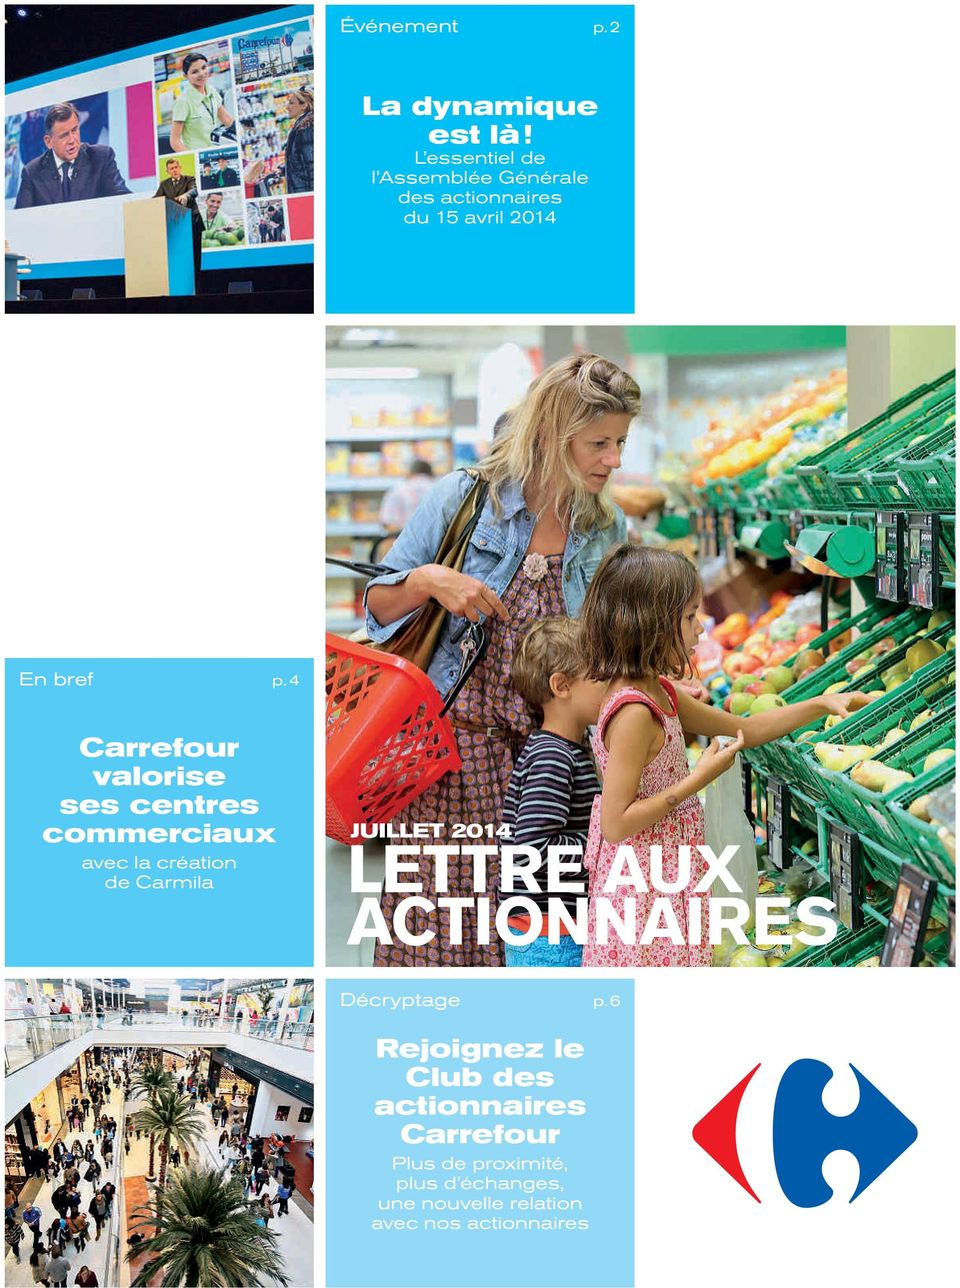 4 Carrefour valorise ses centres commerciaux avec la création de Carmila JUILLET 2014